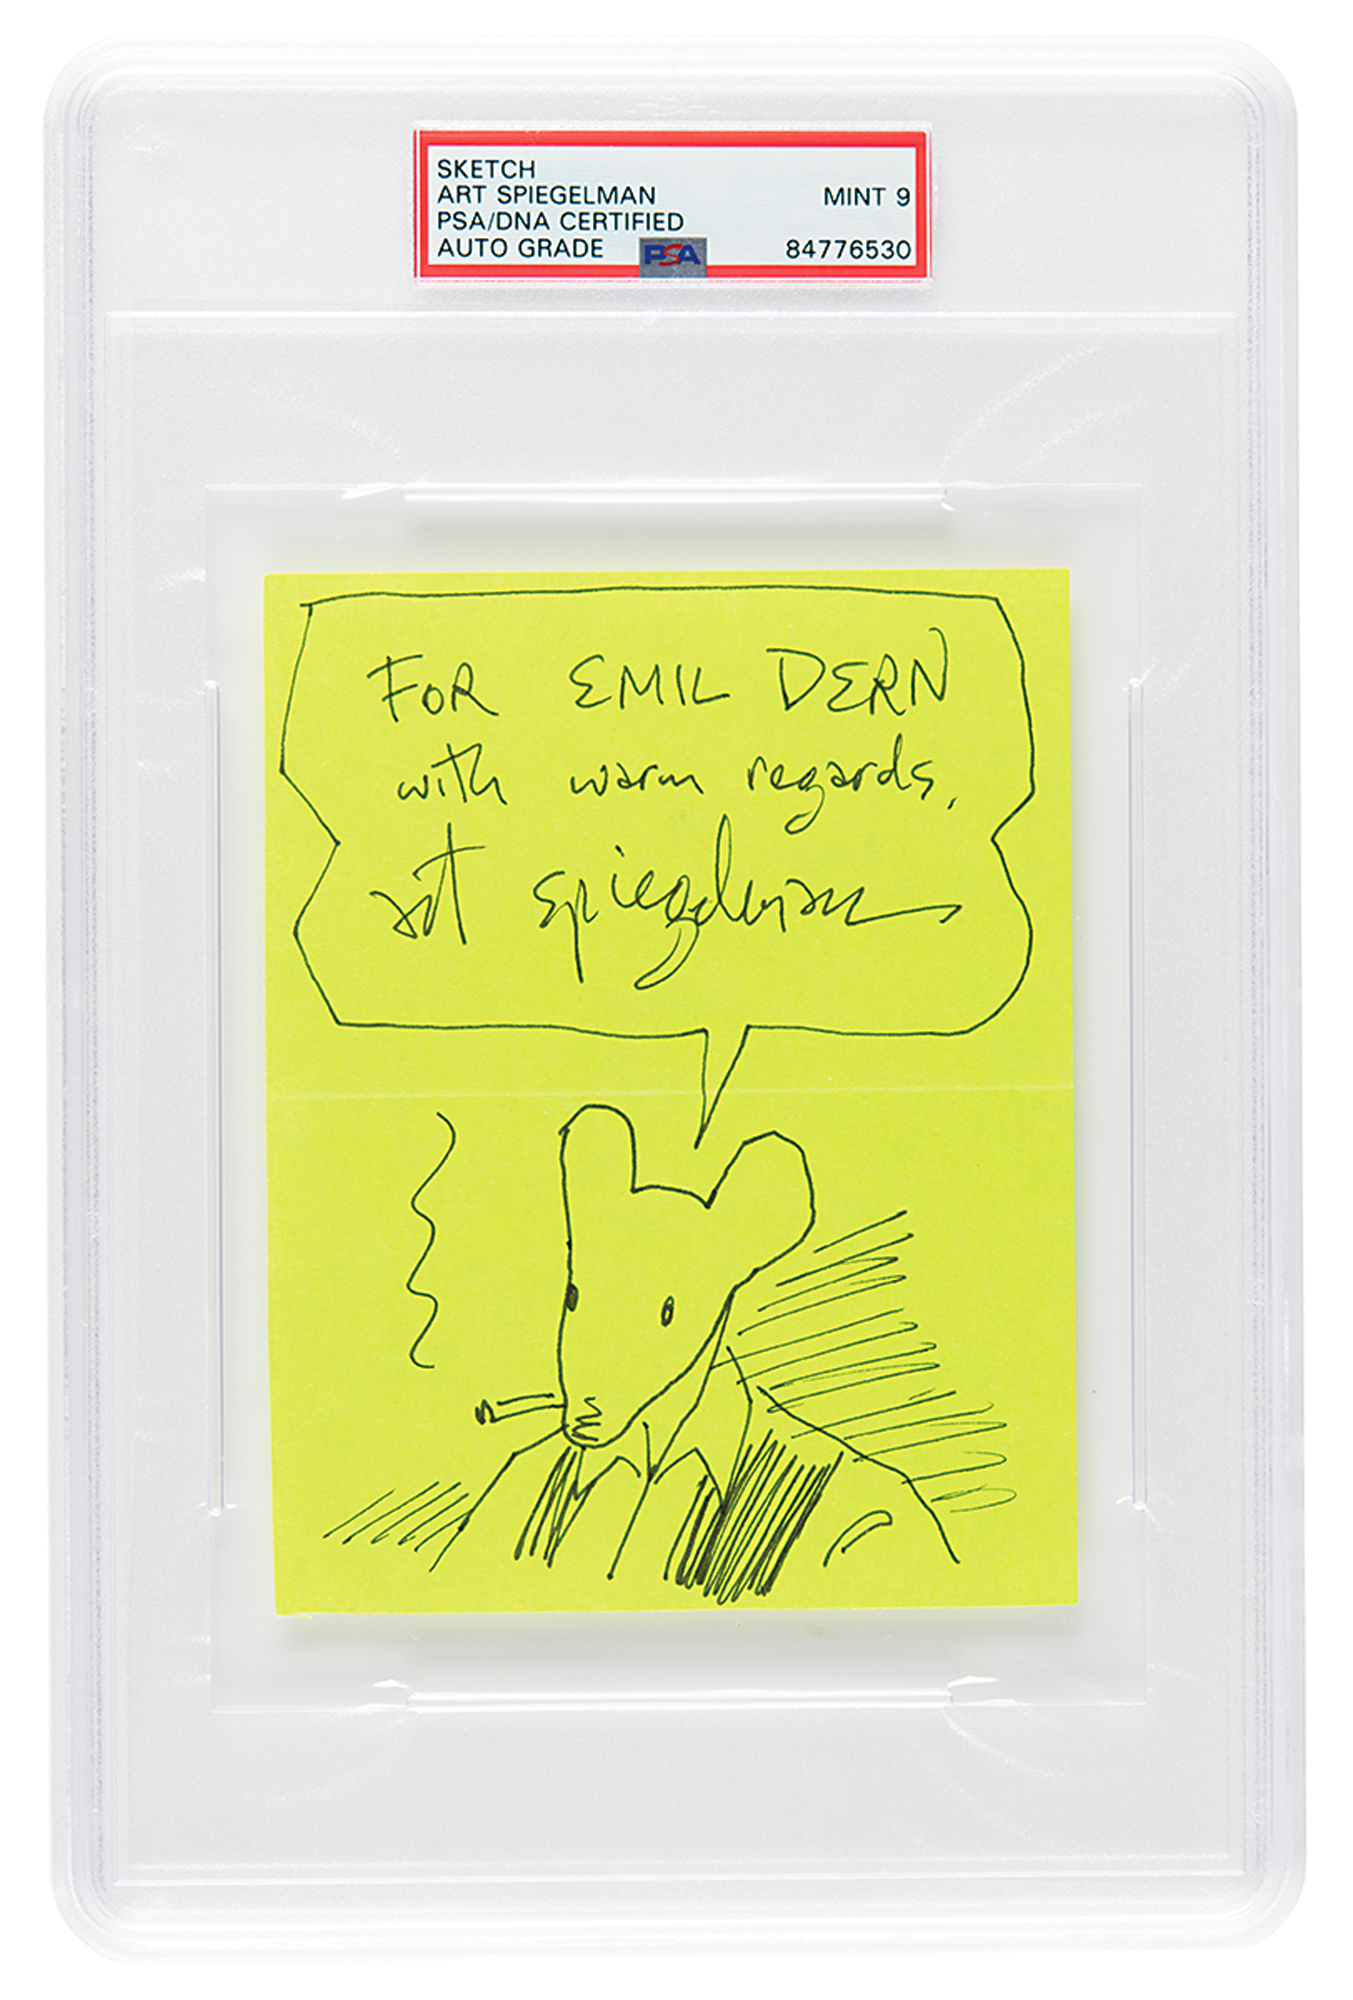 Lot #7207 Art Spiegelman Signed Sketch of Maus - PSA MINT 9